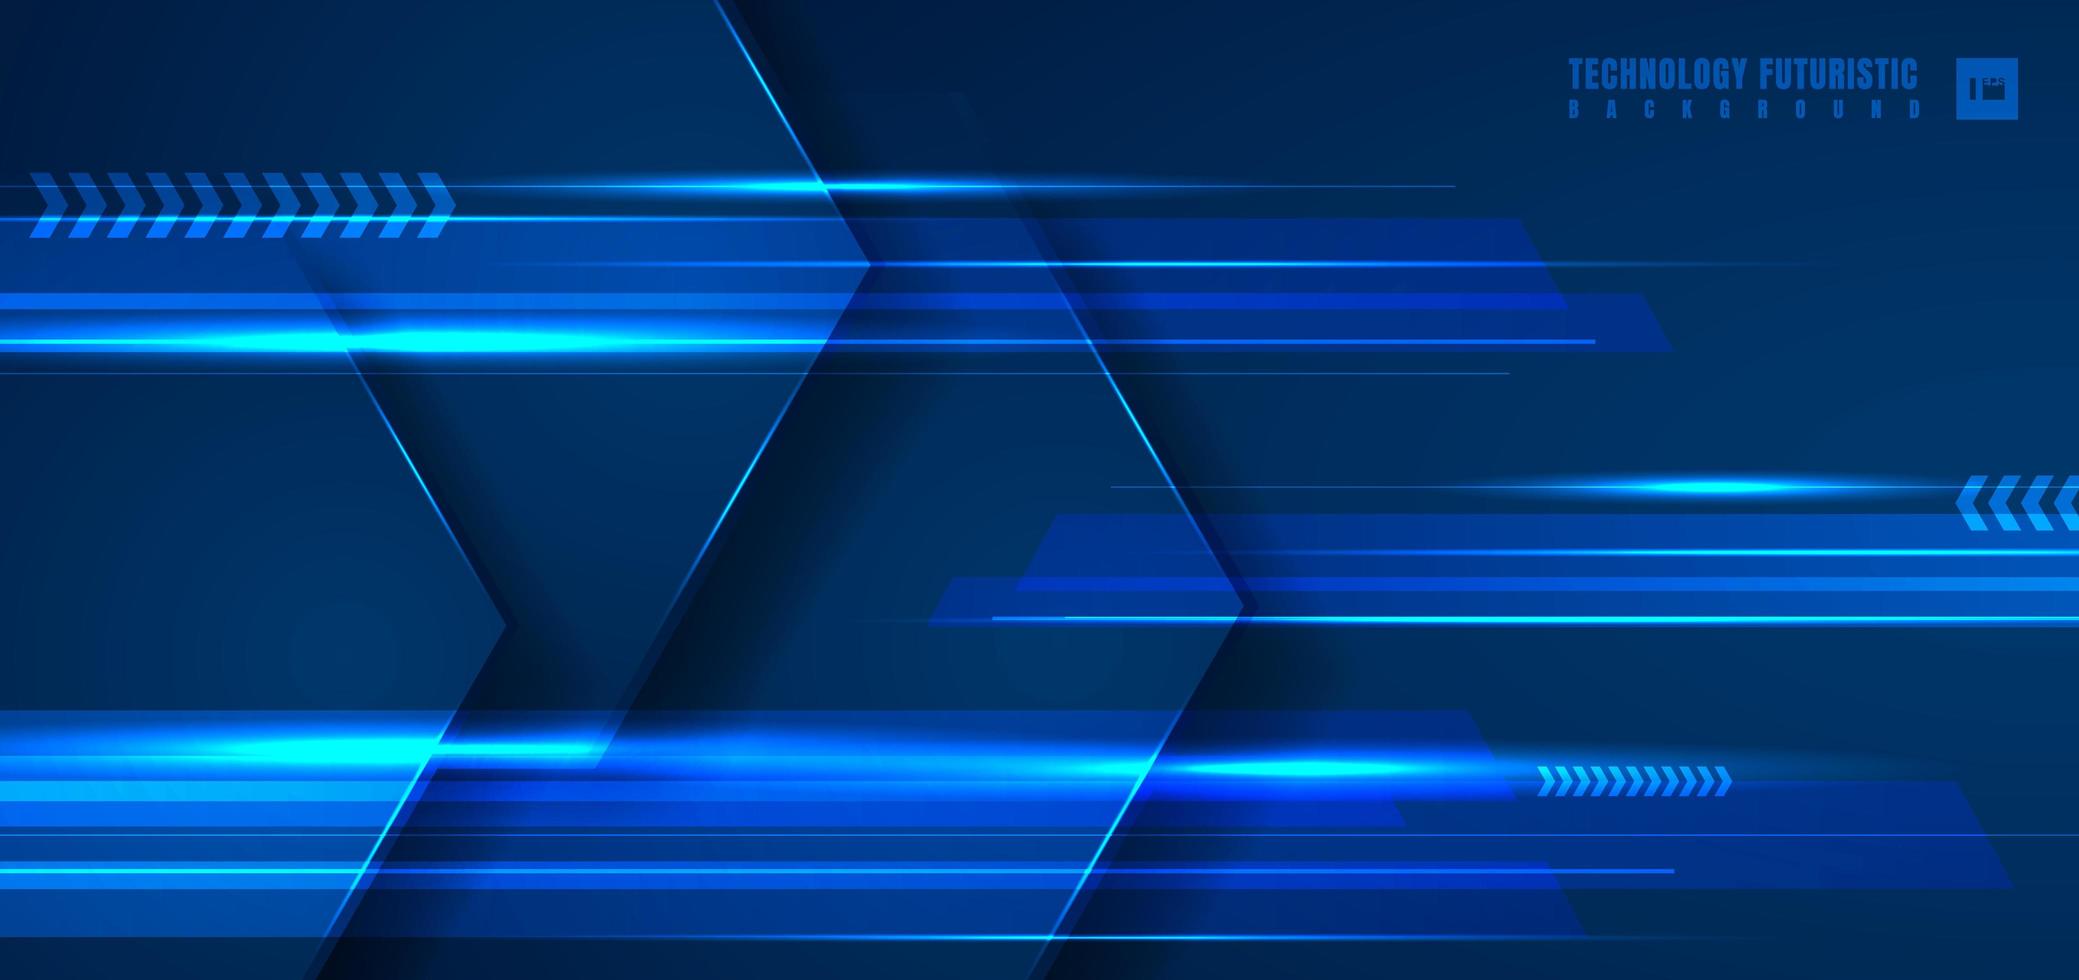 technologie abstraite concept futuriste hexagone géométrique bleu avec ligne de lumière horizontale sur fond bleu foncé. vecteur